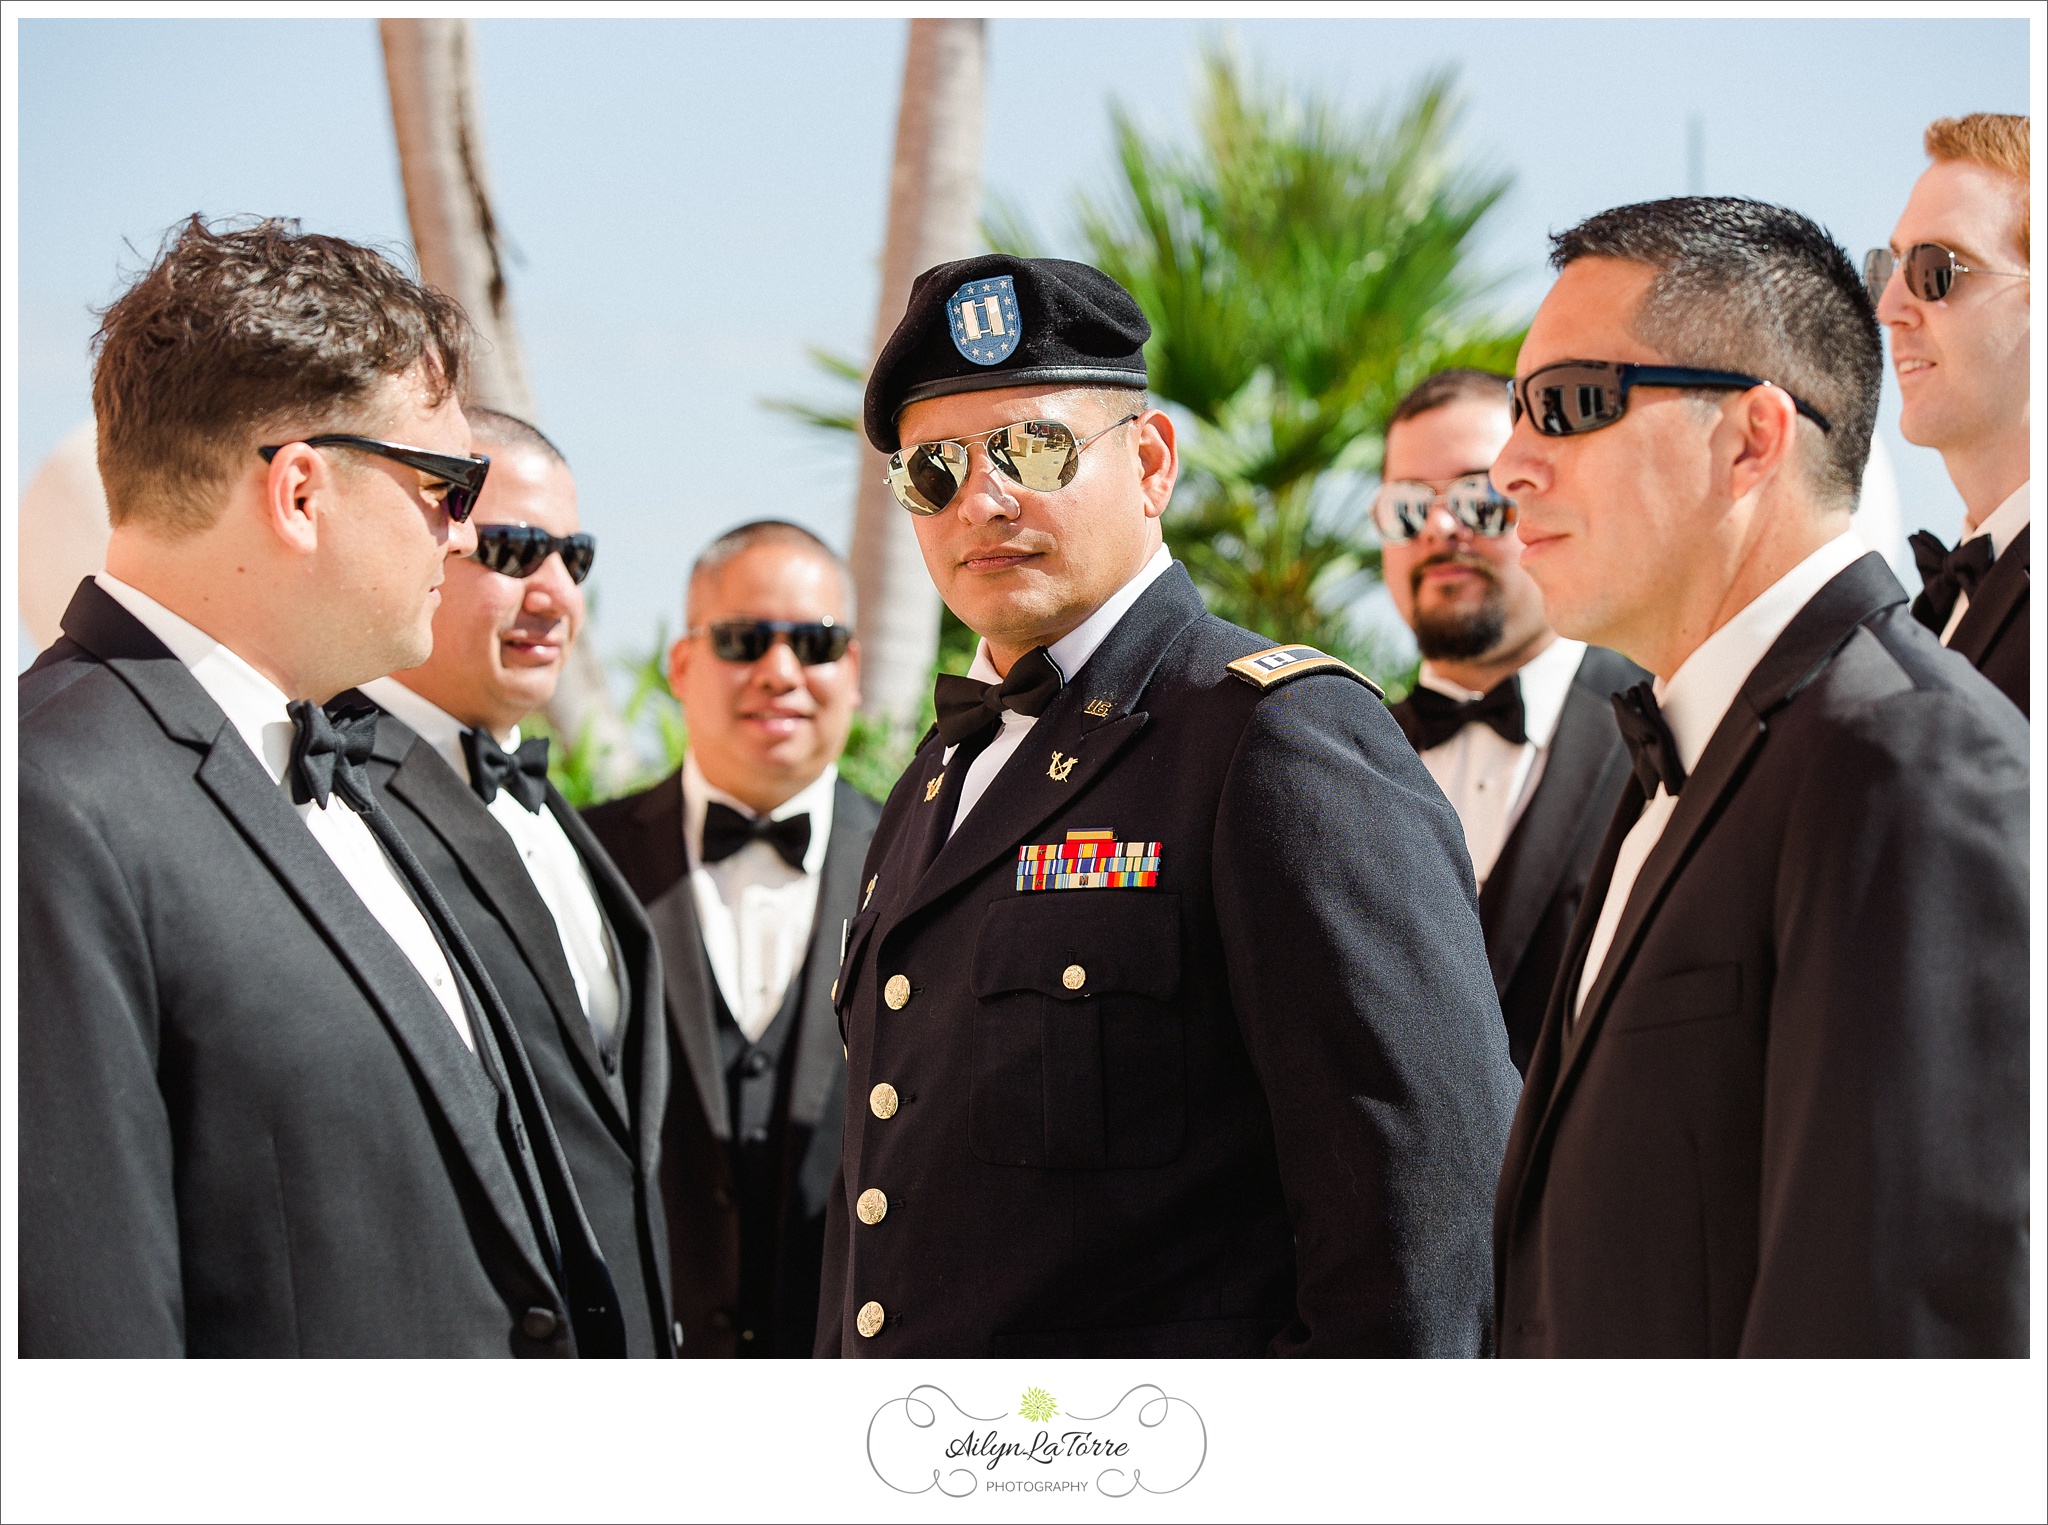 Hyatt Clearwater Beach Wedding |© Ailyn La Torre Photography 2014